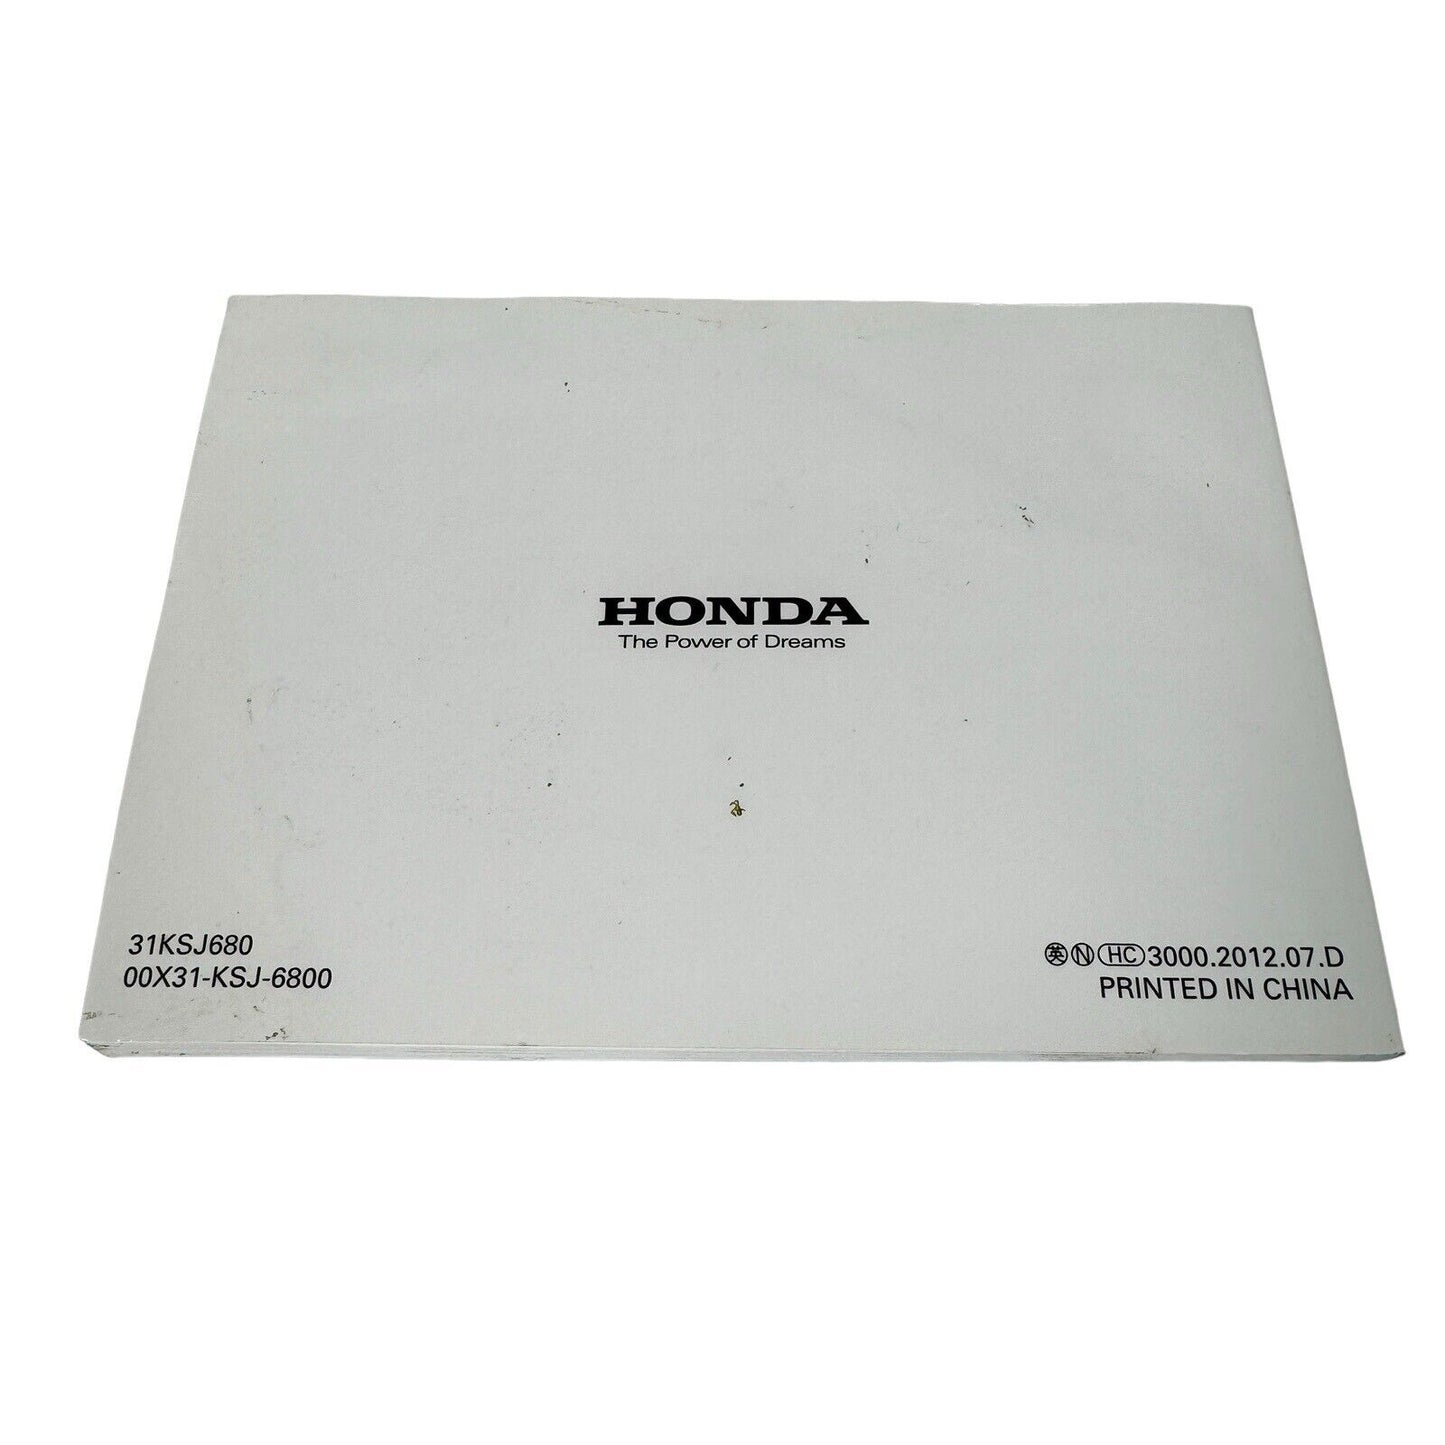 Honda CRF100F 2013 Owners Manual, Factory Oem Book Dirtbike 00x31-KSj-6800